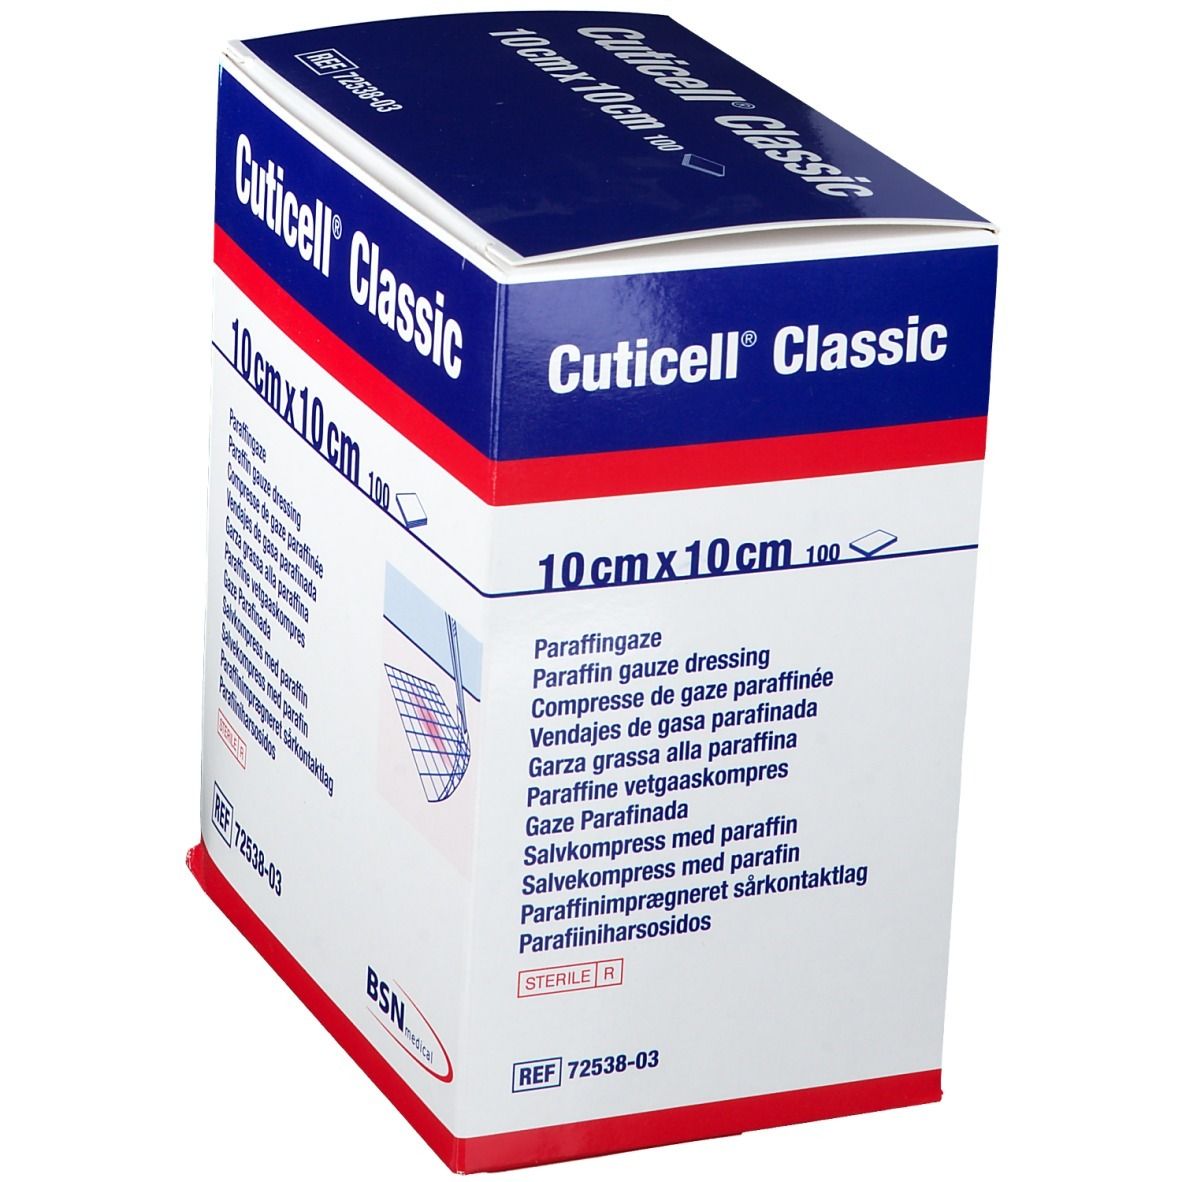 Cuticell® Classic 10 cm x 10 cm